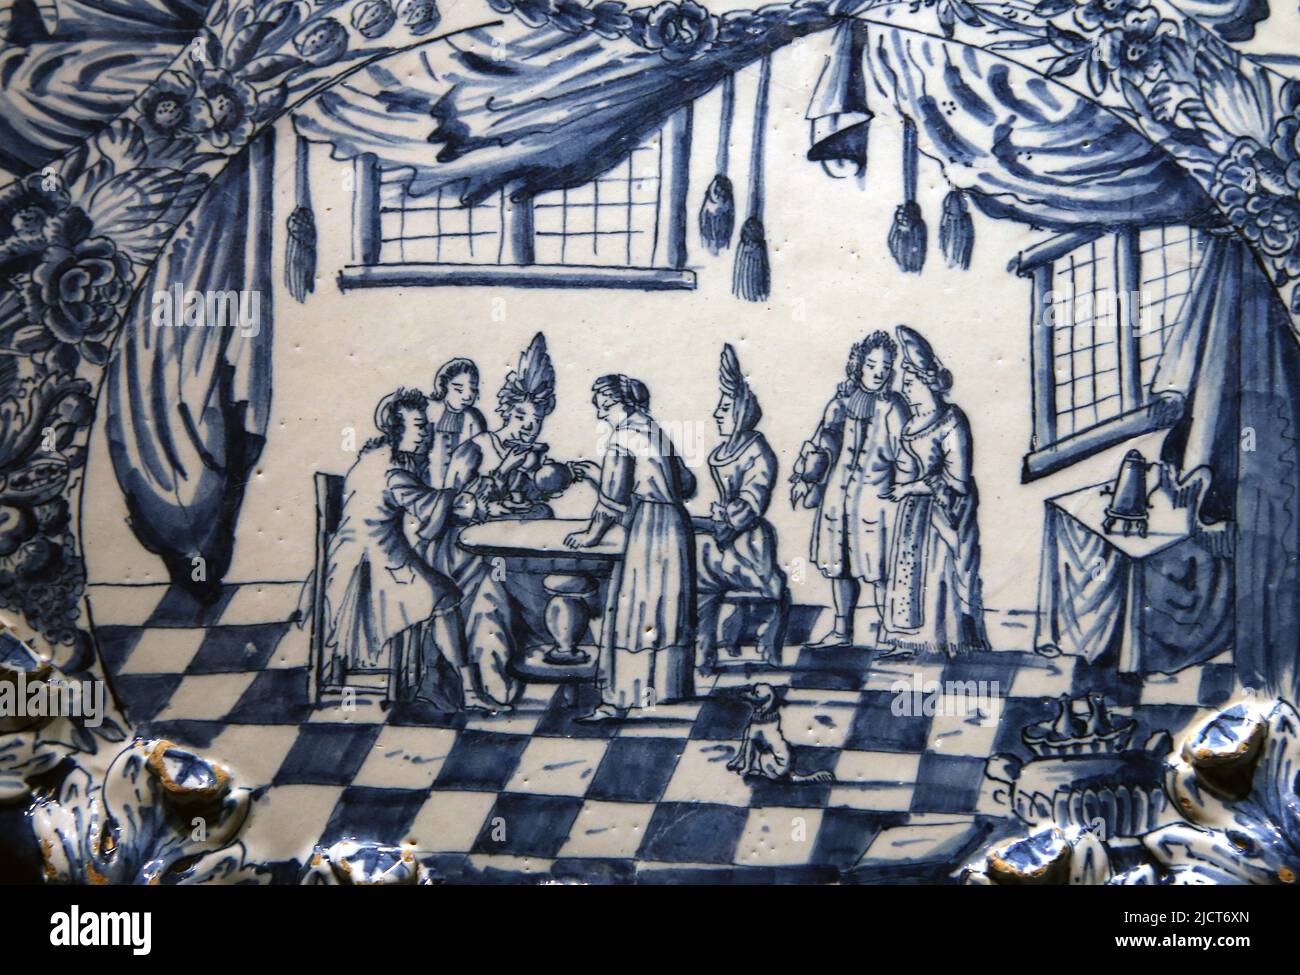 Delftware (loza de barro) decorado con escena de una reunión aristocrática. Rijksmuseum. Ámsterdam. Países Bajos.e Foto de stock